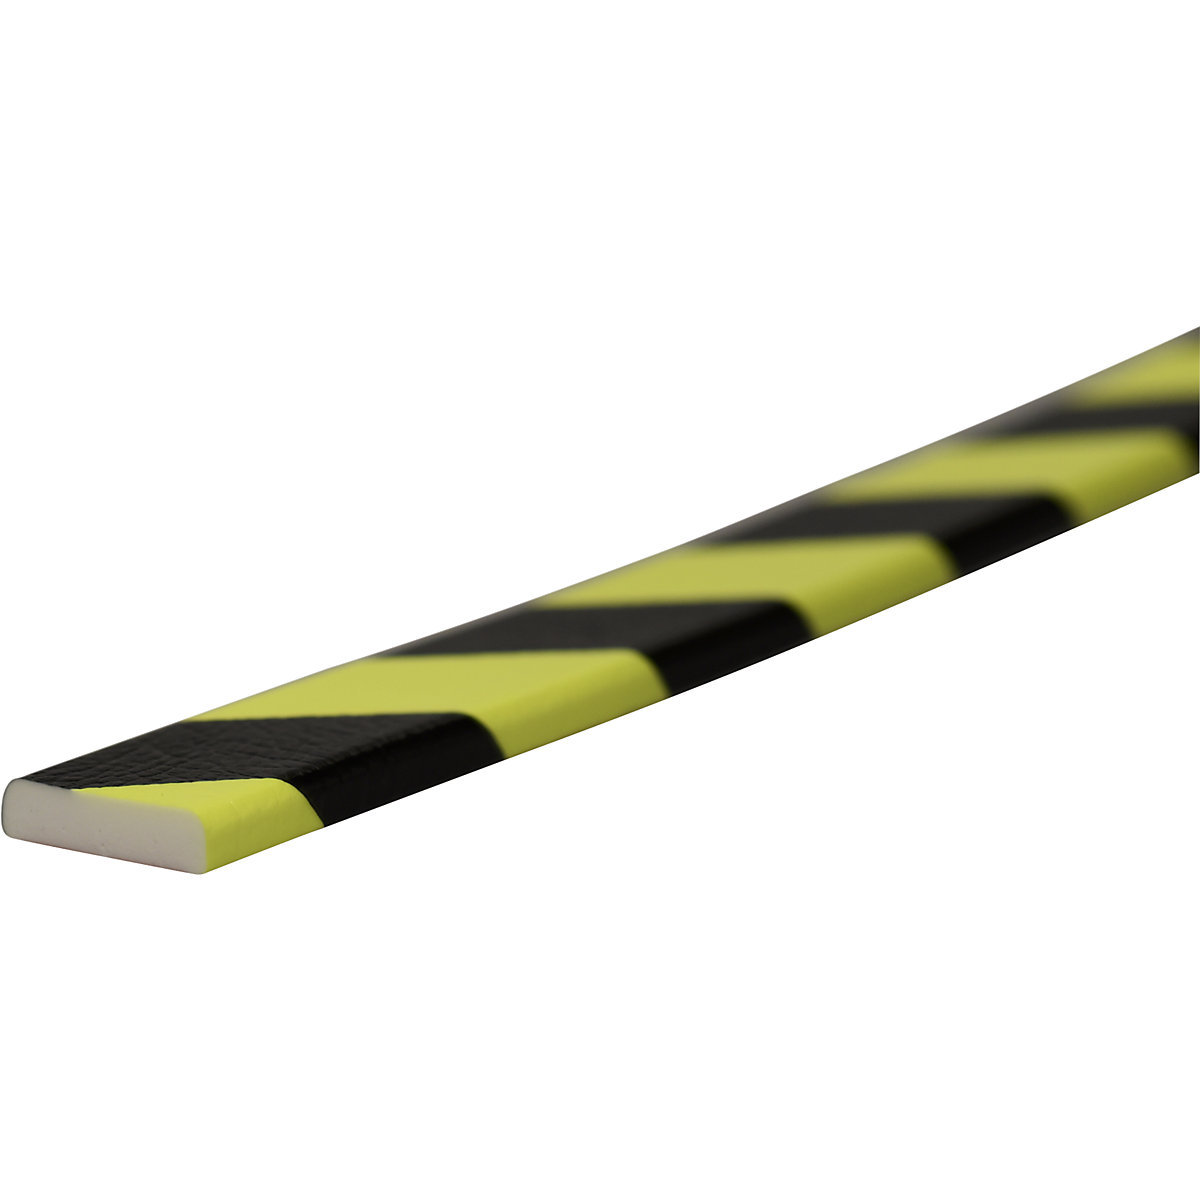 Protection des surfaces Knuffi® – SHG, type F, pièce de 1 m, noir/fluorescent